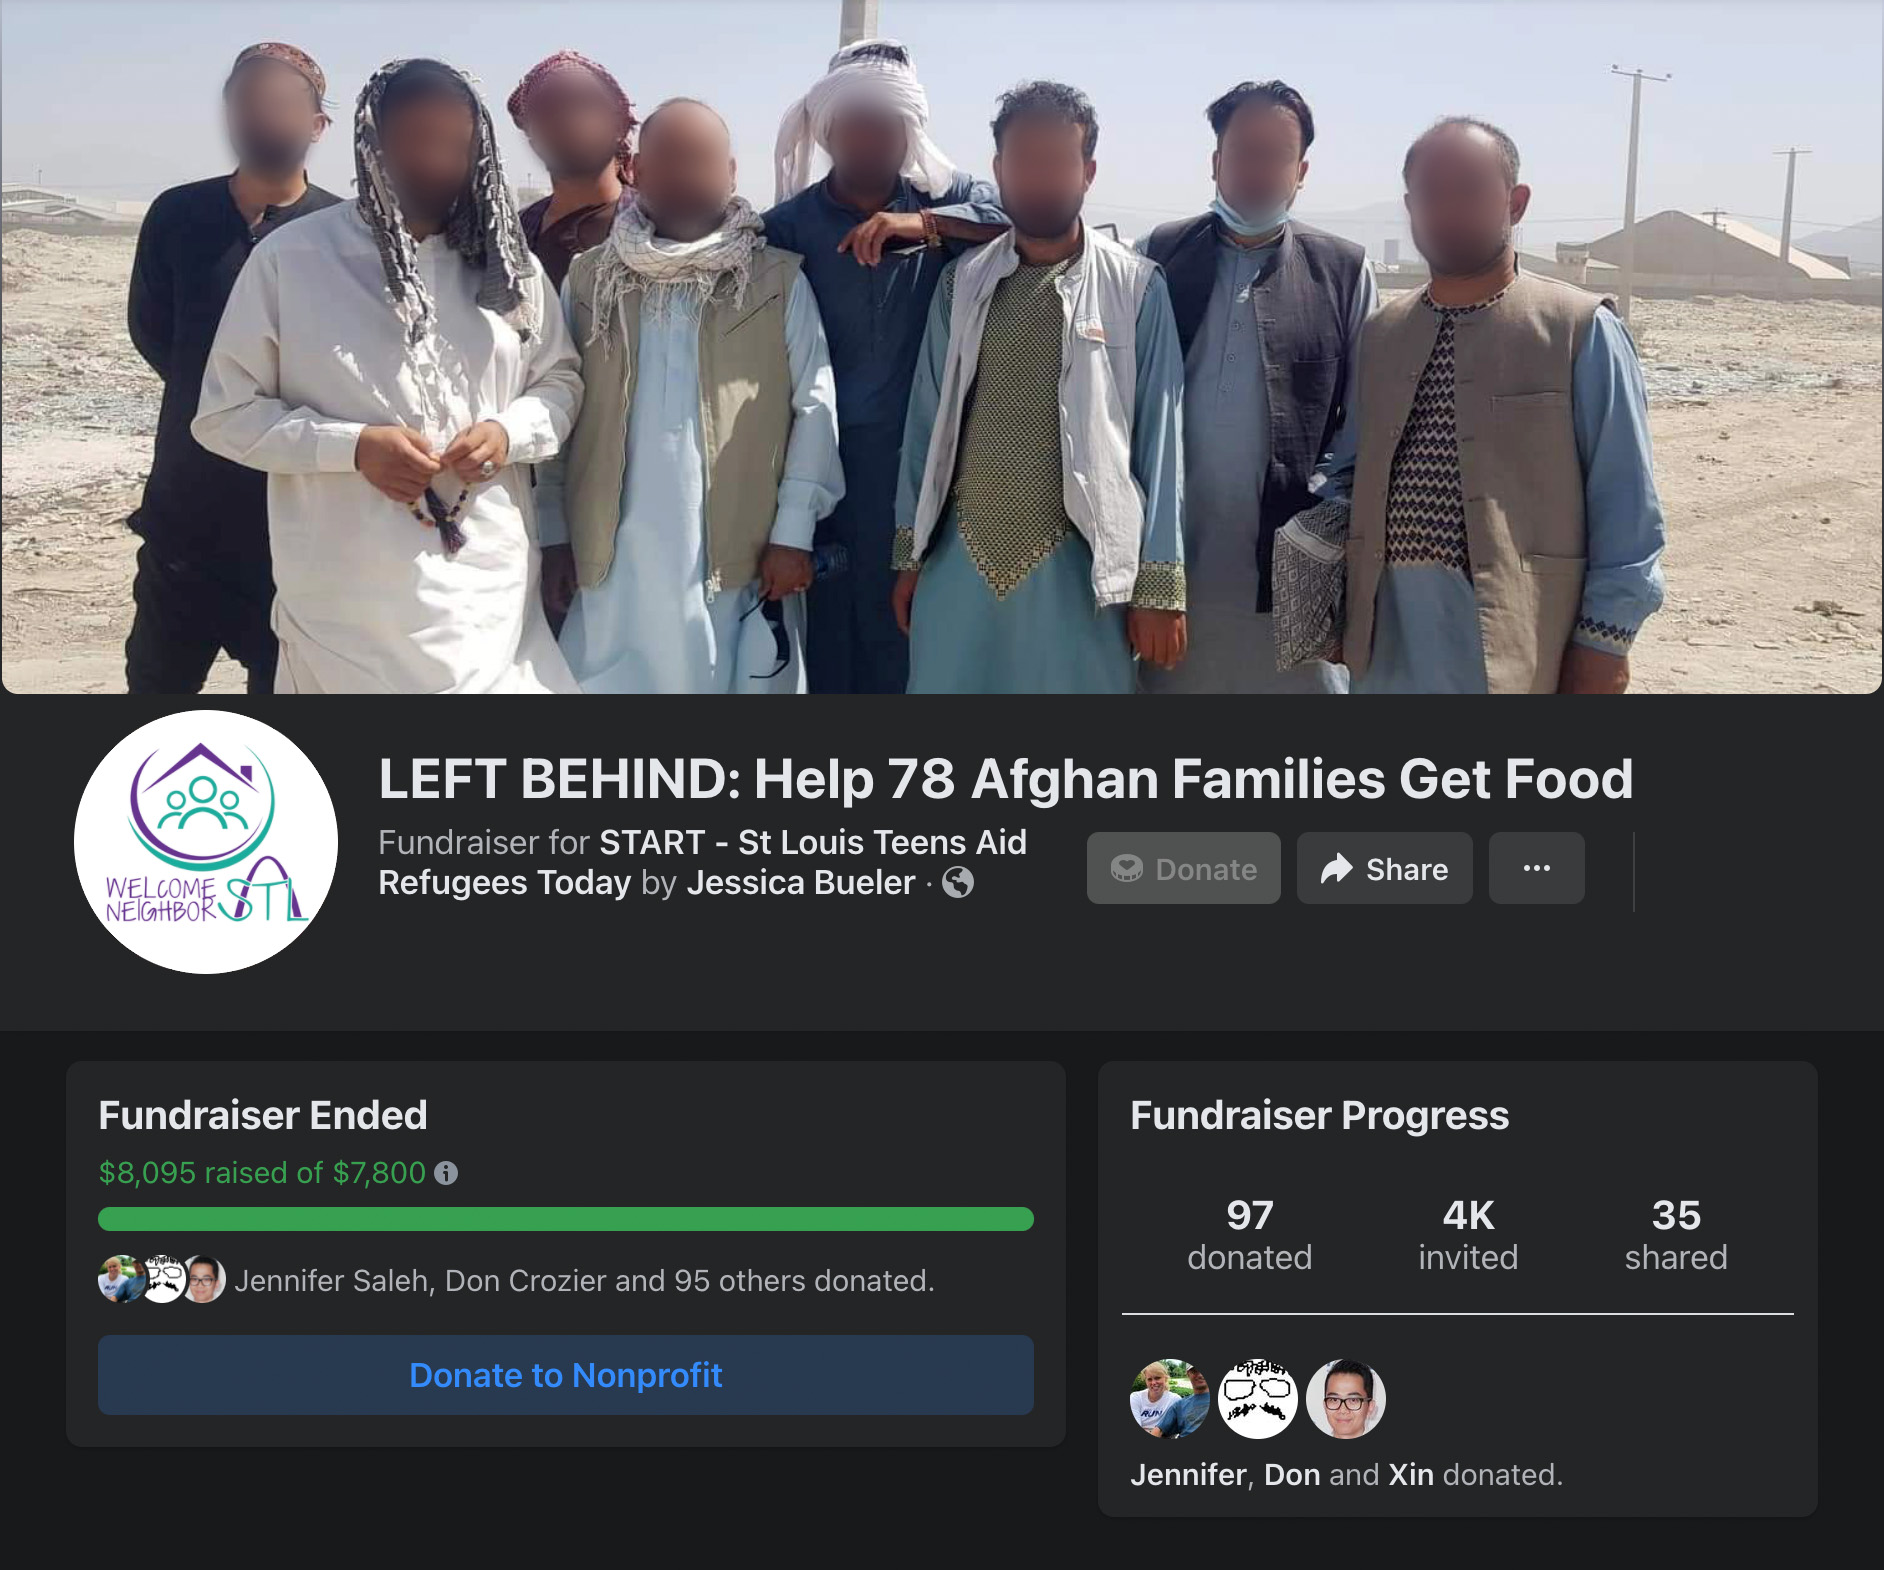 LEFT BEHIND: Help 78 Afghan Families Get Food